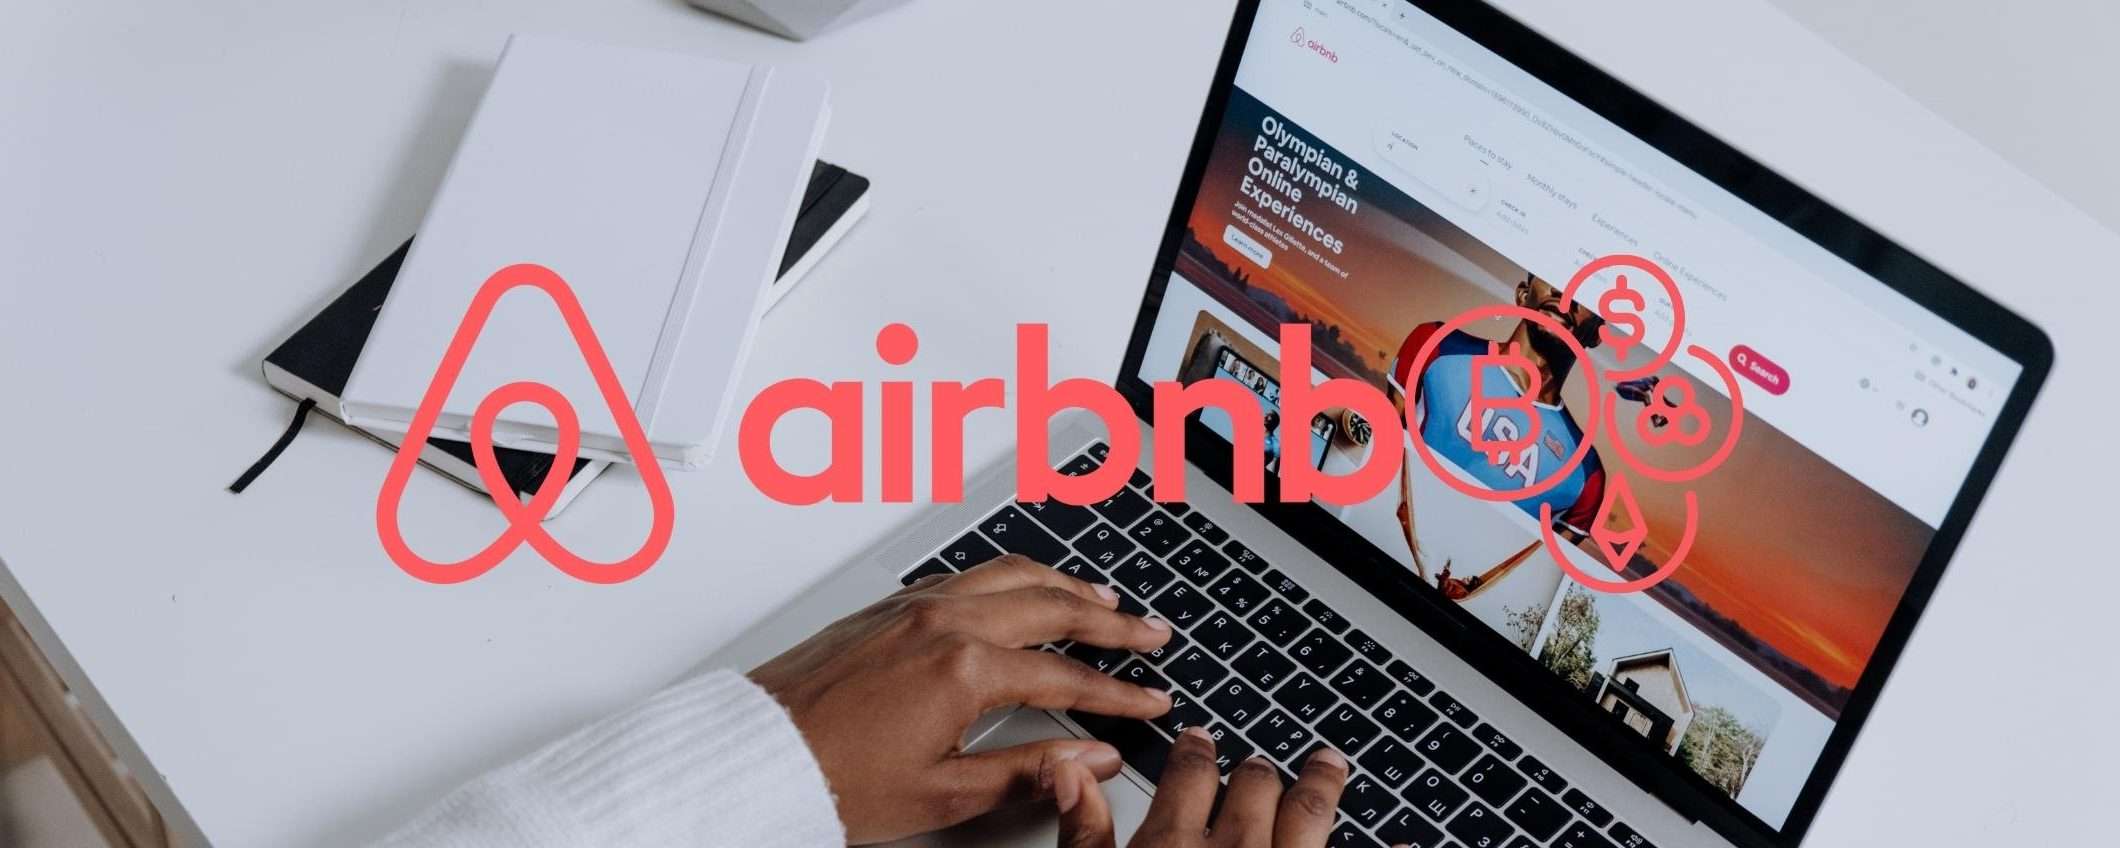 Airbnb a breve potrebbe supportare il pagamento in criptovalute